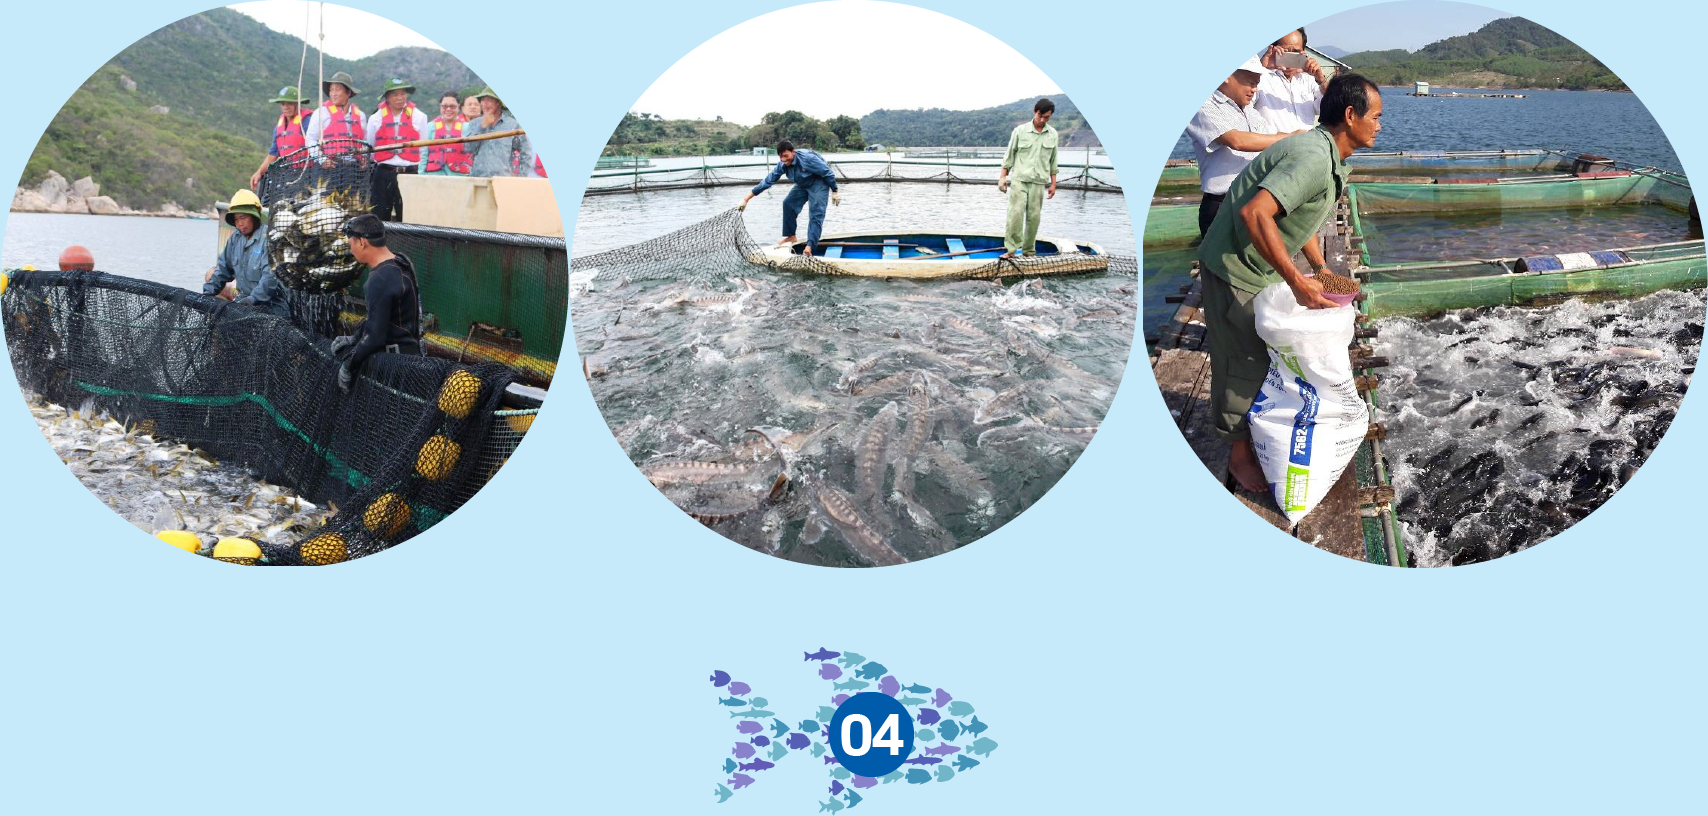 Hóa giải các thách thức trong nuôi trồng thủy sản - Ảnh 5